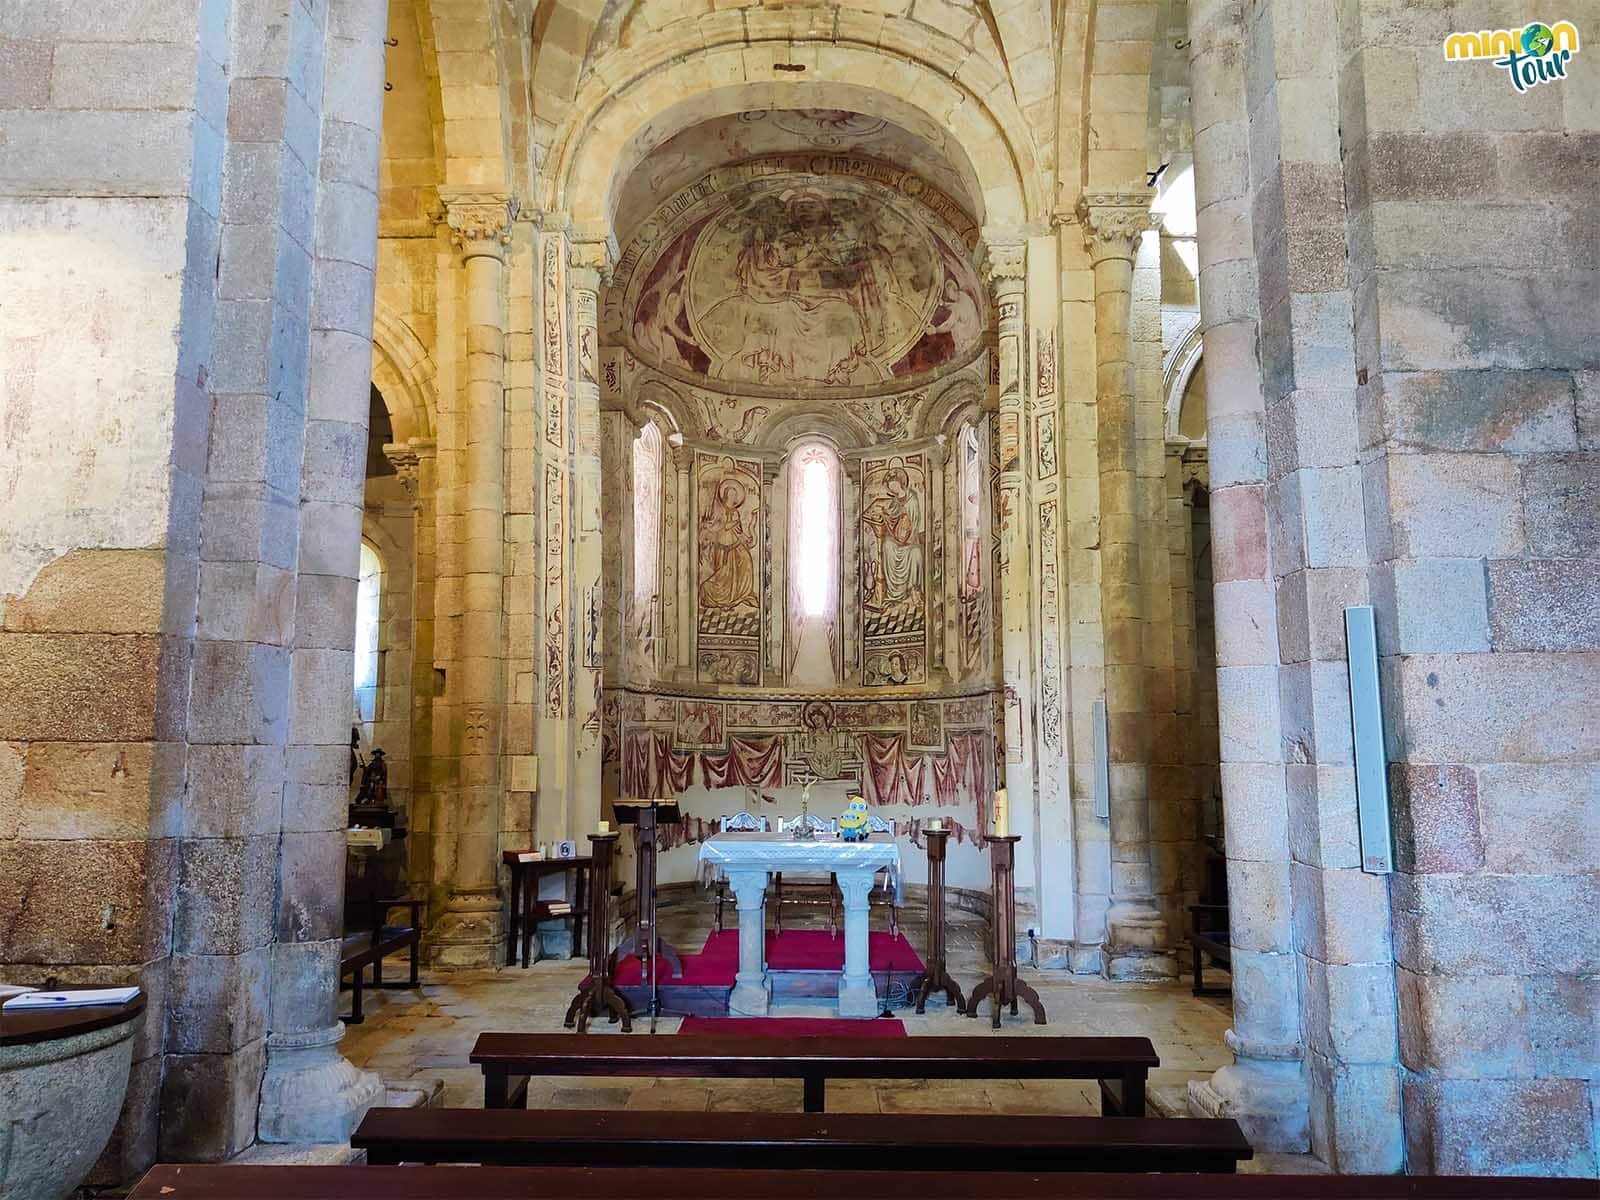 La Iglesia de Vilar de Donas, una joya del románico a unos metros del Camino de Santiago